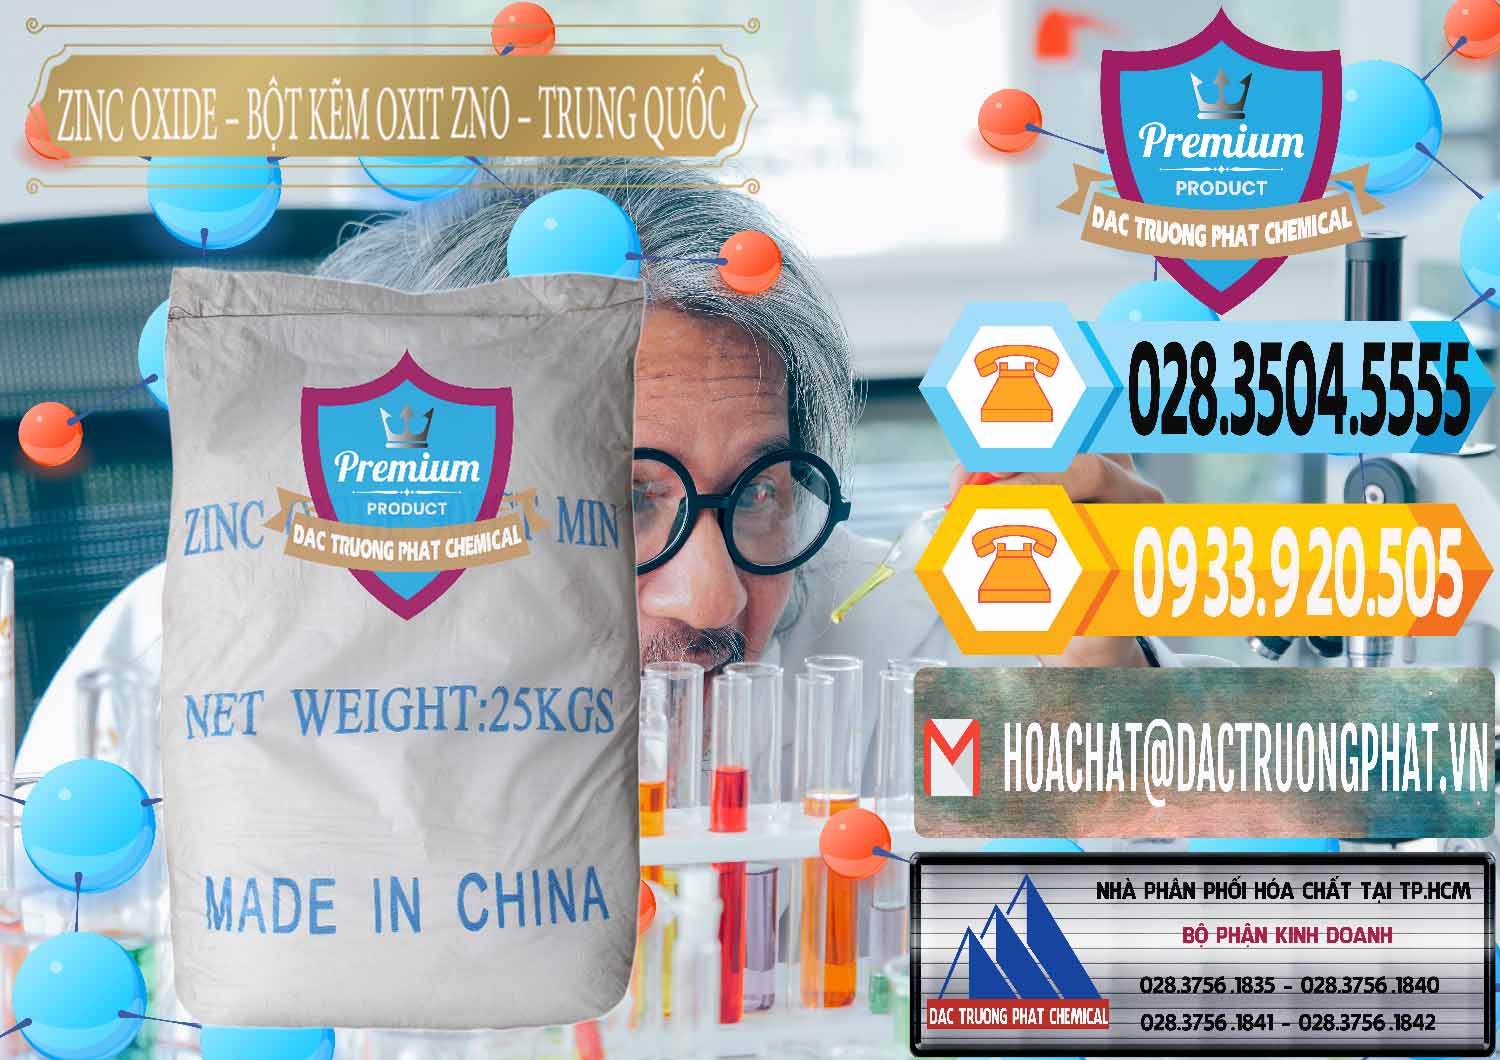 Đơn vị cung ứng _ bán Zinc Oxide - Bột Kẽm Oxit ZNO Trung Quốc China - 0182 - Cty phân phối _ cung cấp hóa chất tại TP.HCM - hoachattayrua.net